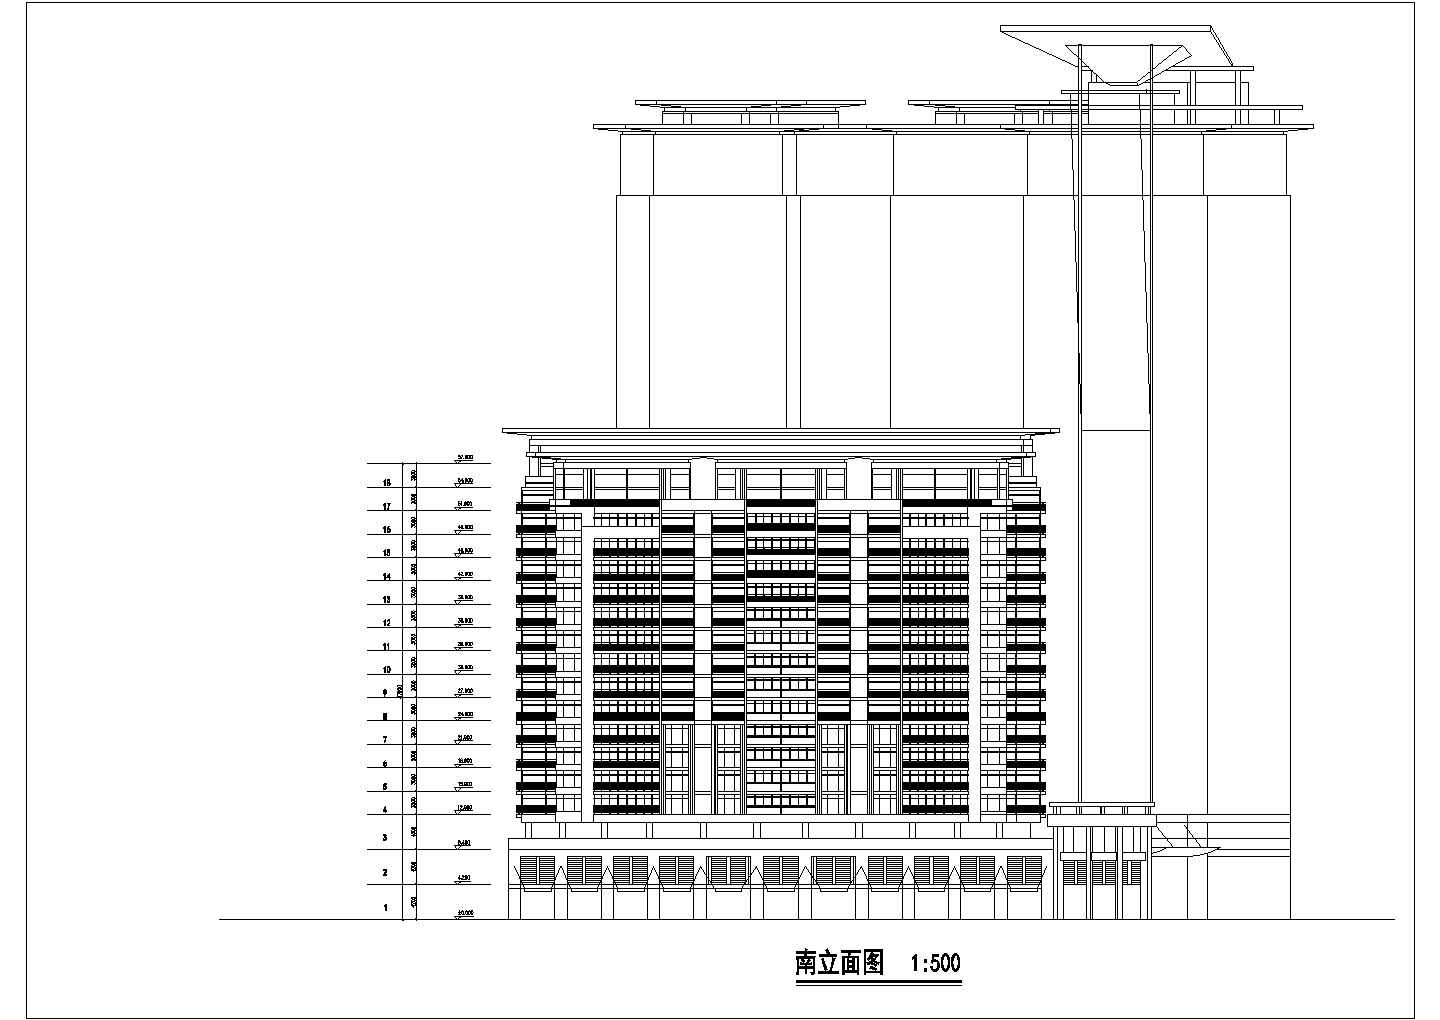 北京某三十三国际大厦建筑设计方案